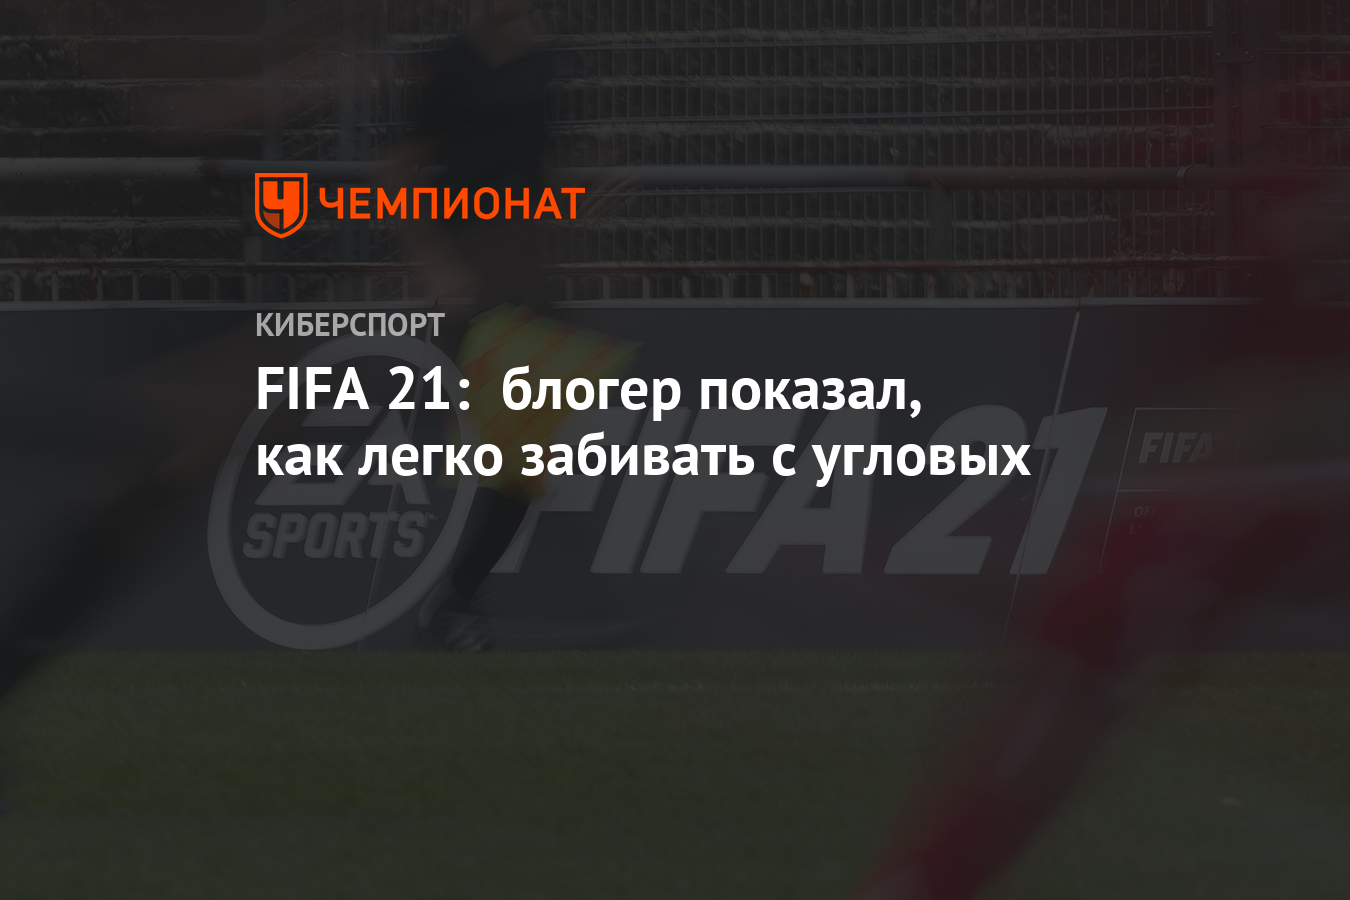 FIFA 21: блогер показал, как легко забивать с угловых - Чемпионат